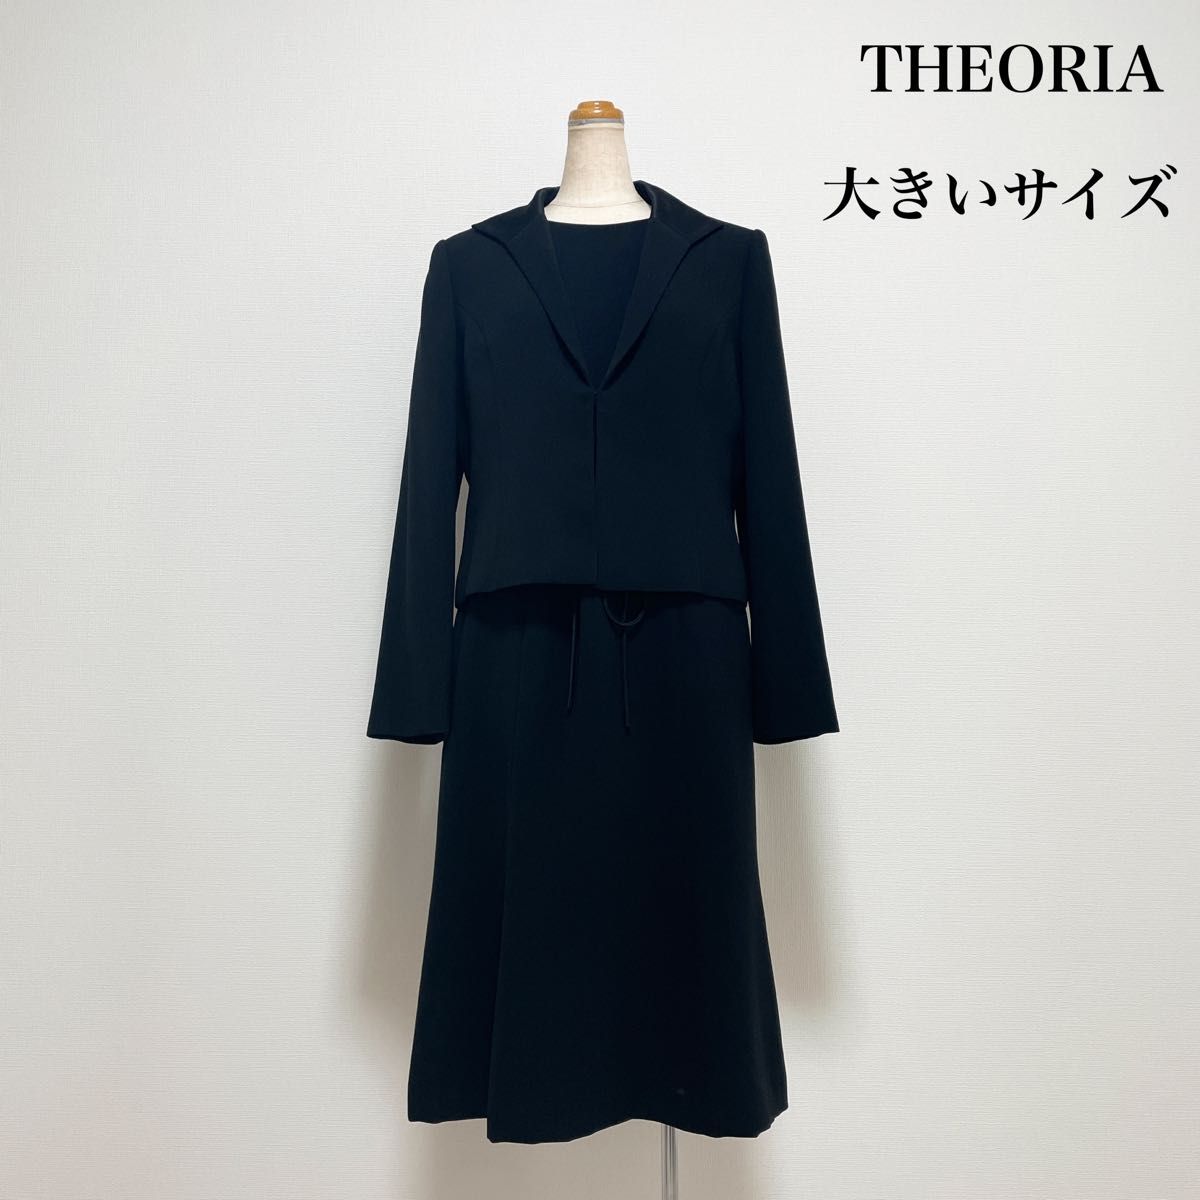 THEORIA ブラックフォーマル アンサンブル ワンピース 黒 大きいサイズ 13号 冠婚葬祭 喪服 礼服